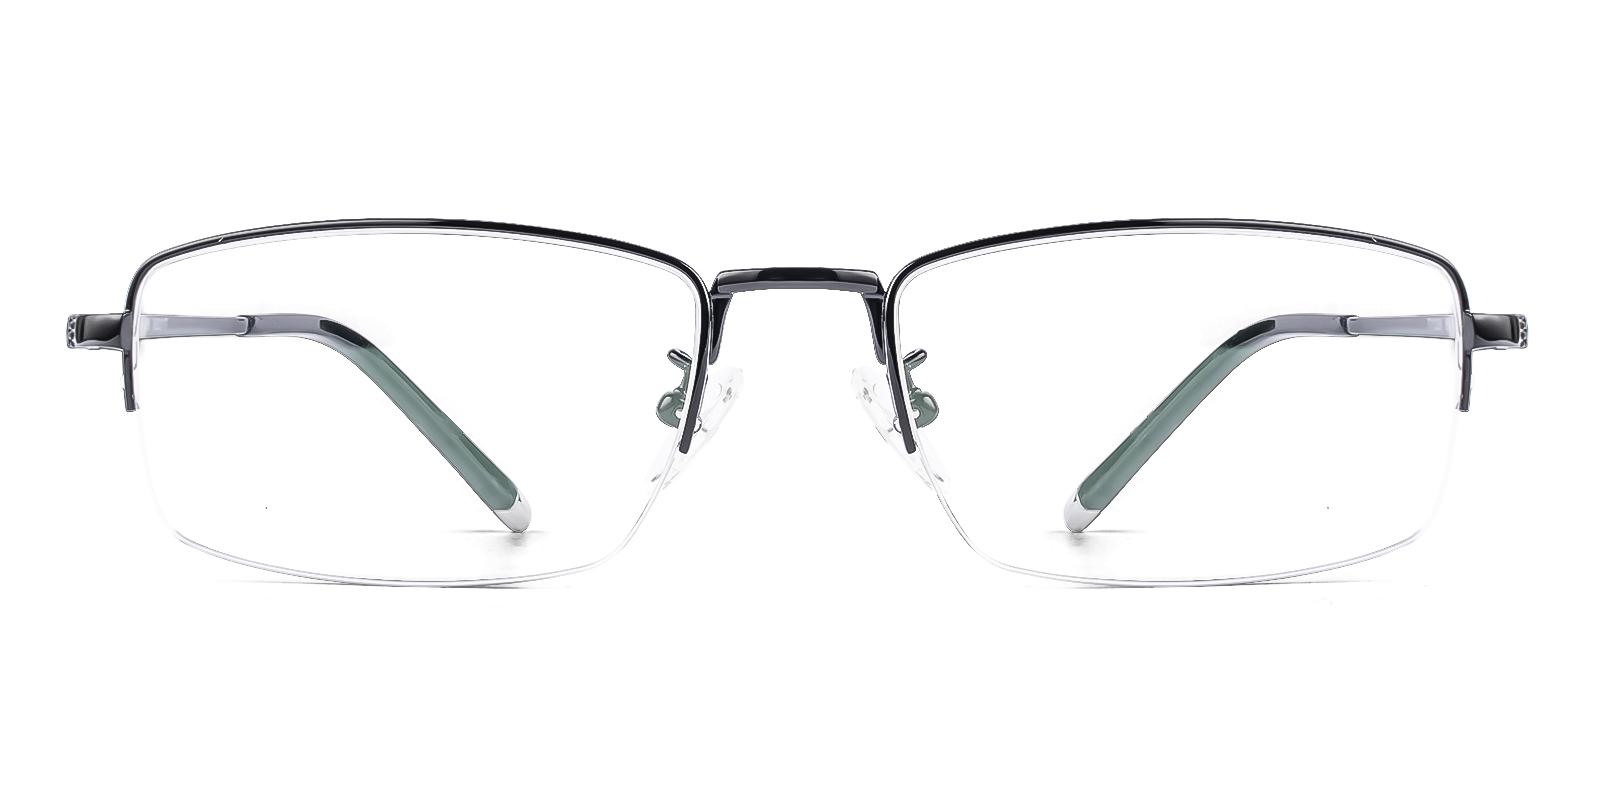 Gregics Black Titanium Eyeglasses , NosePads Frames from ABBE Glasses